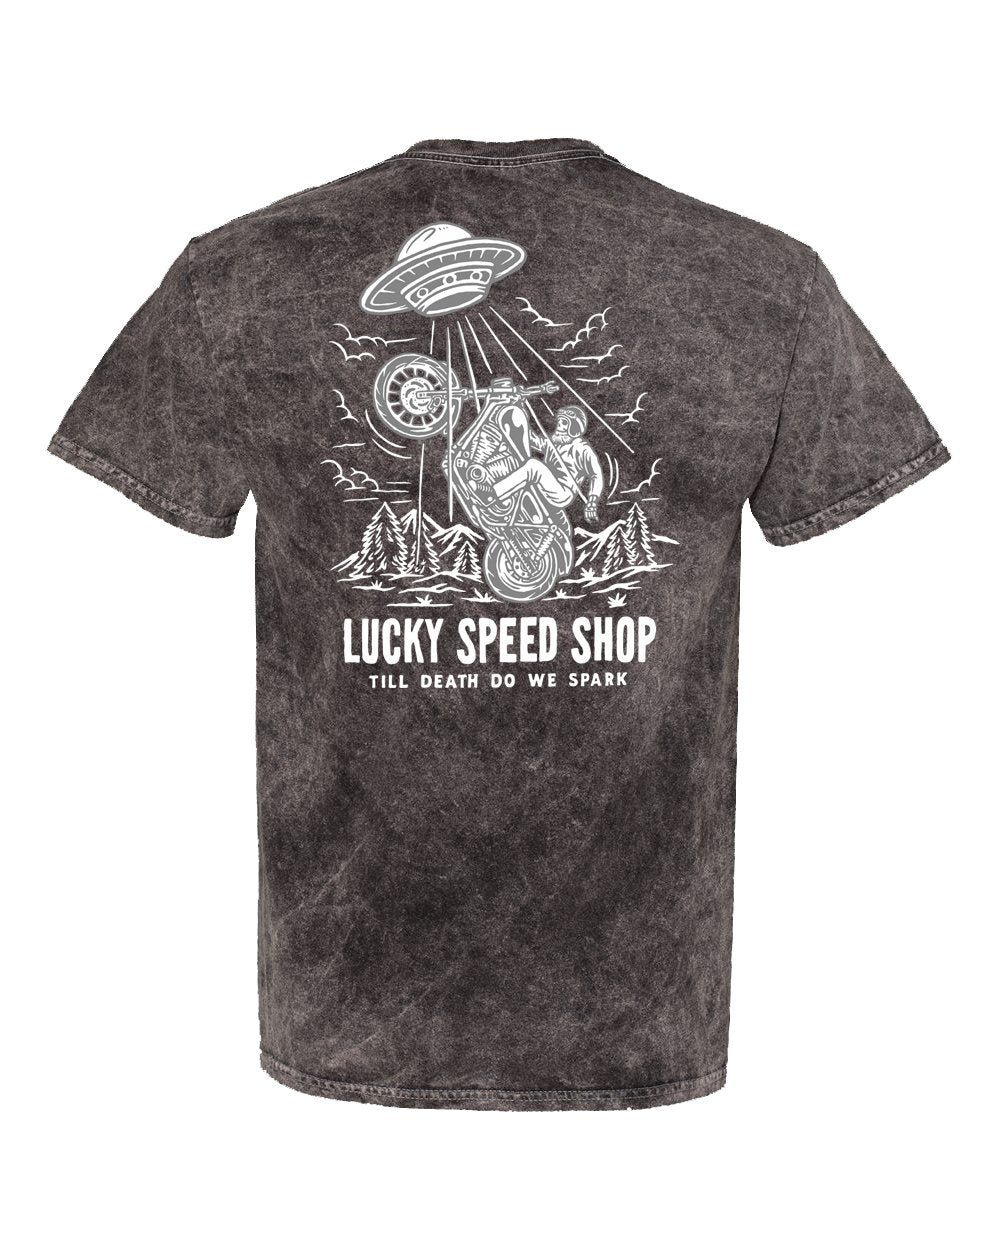 New Gear! - Lucky Speed Shop